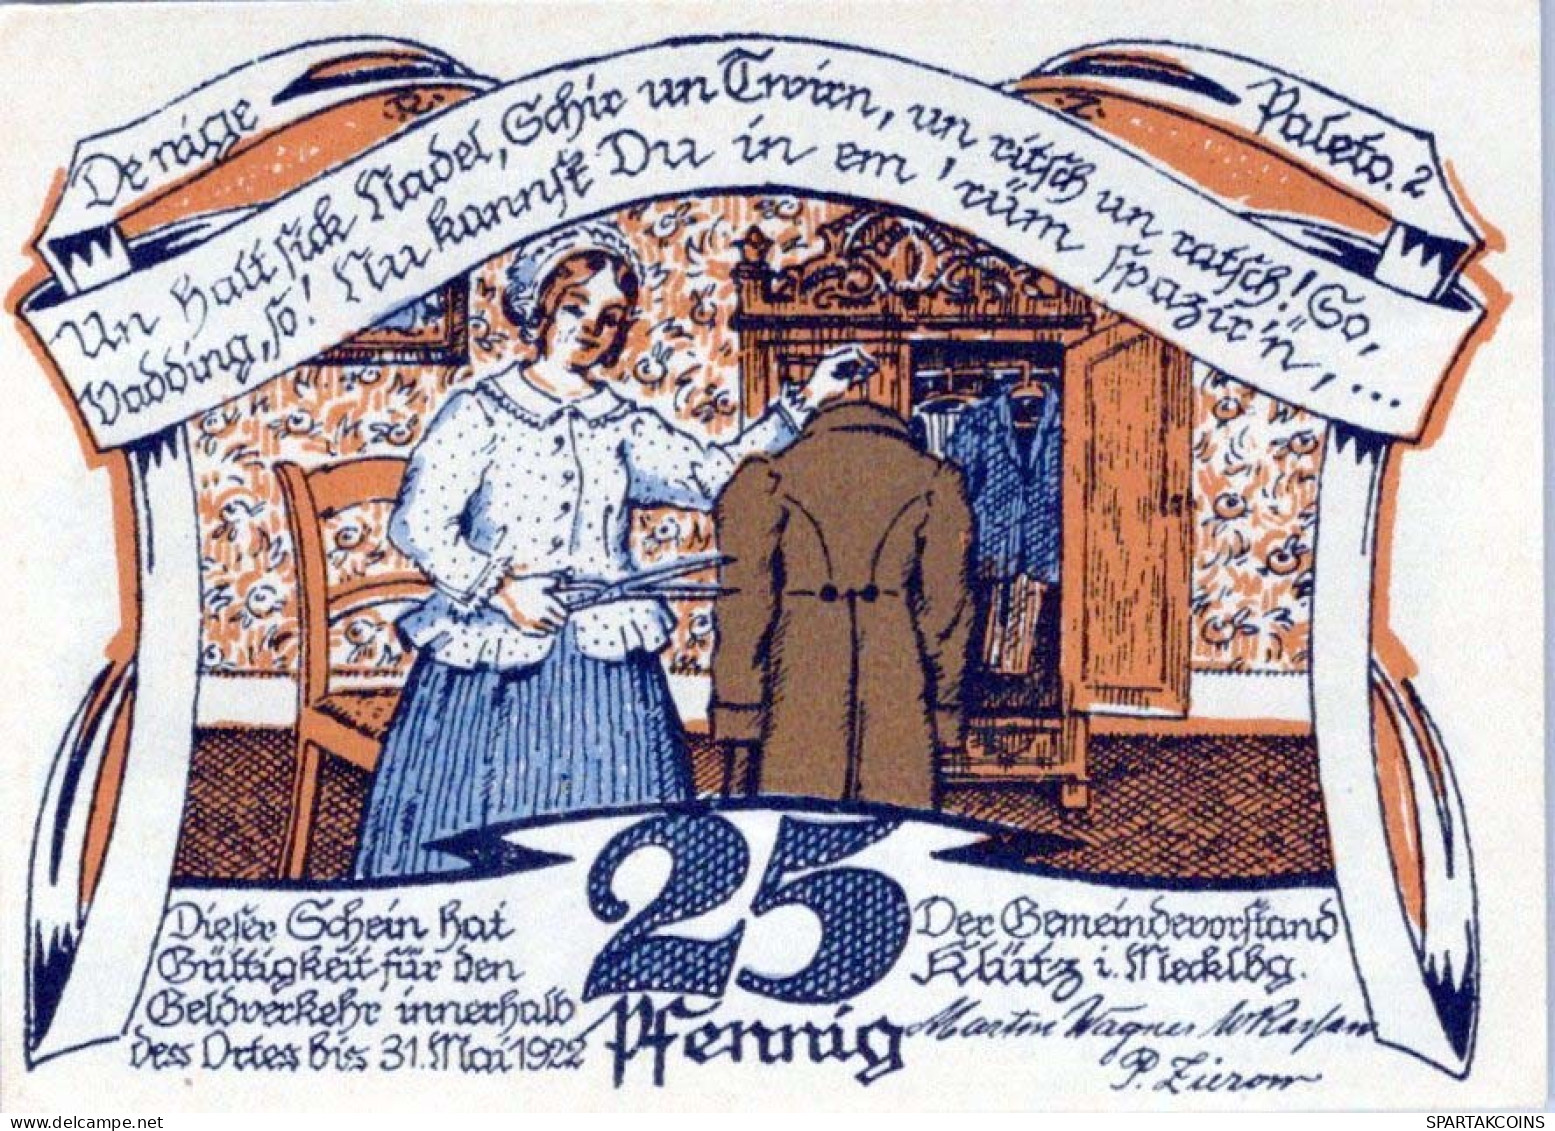 25 PFENNIG 1922 Stadt KLÜTZ Mecklenburg-Schwerin UNC DEUTSCHLAND Notgeld #PI551 - [11] Local Banknote Issues